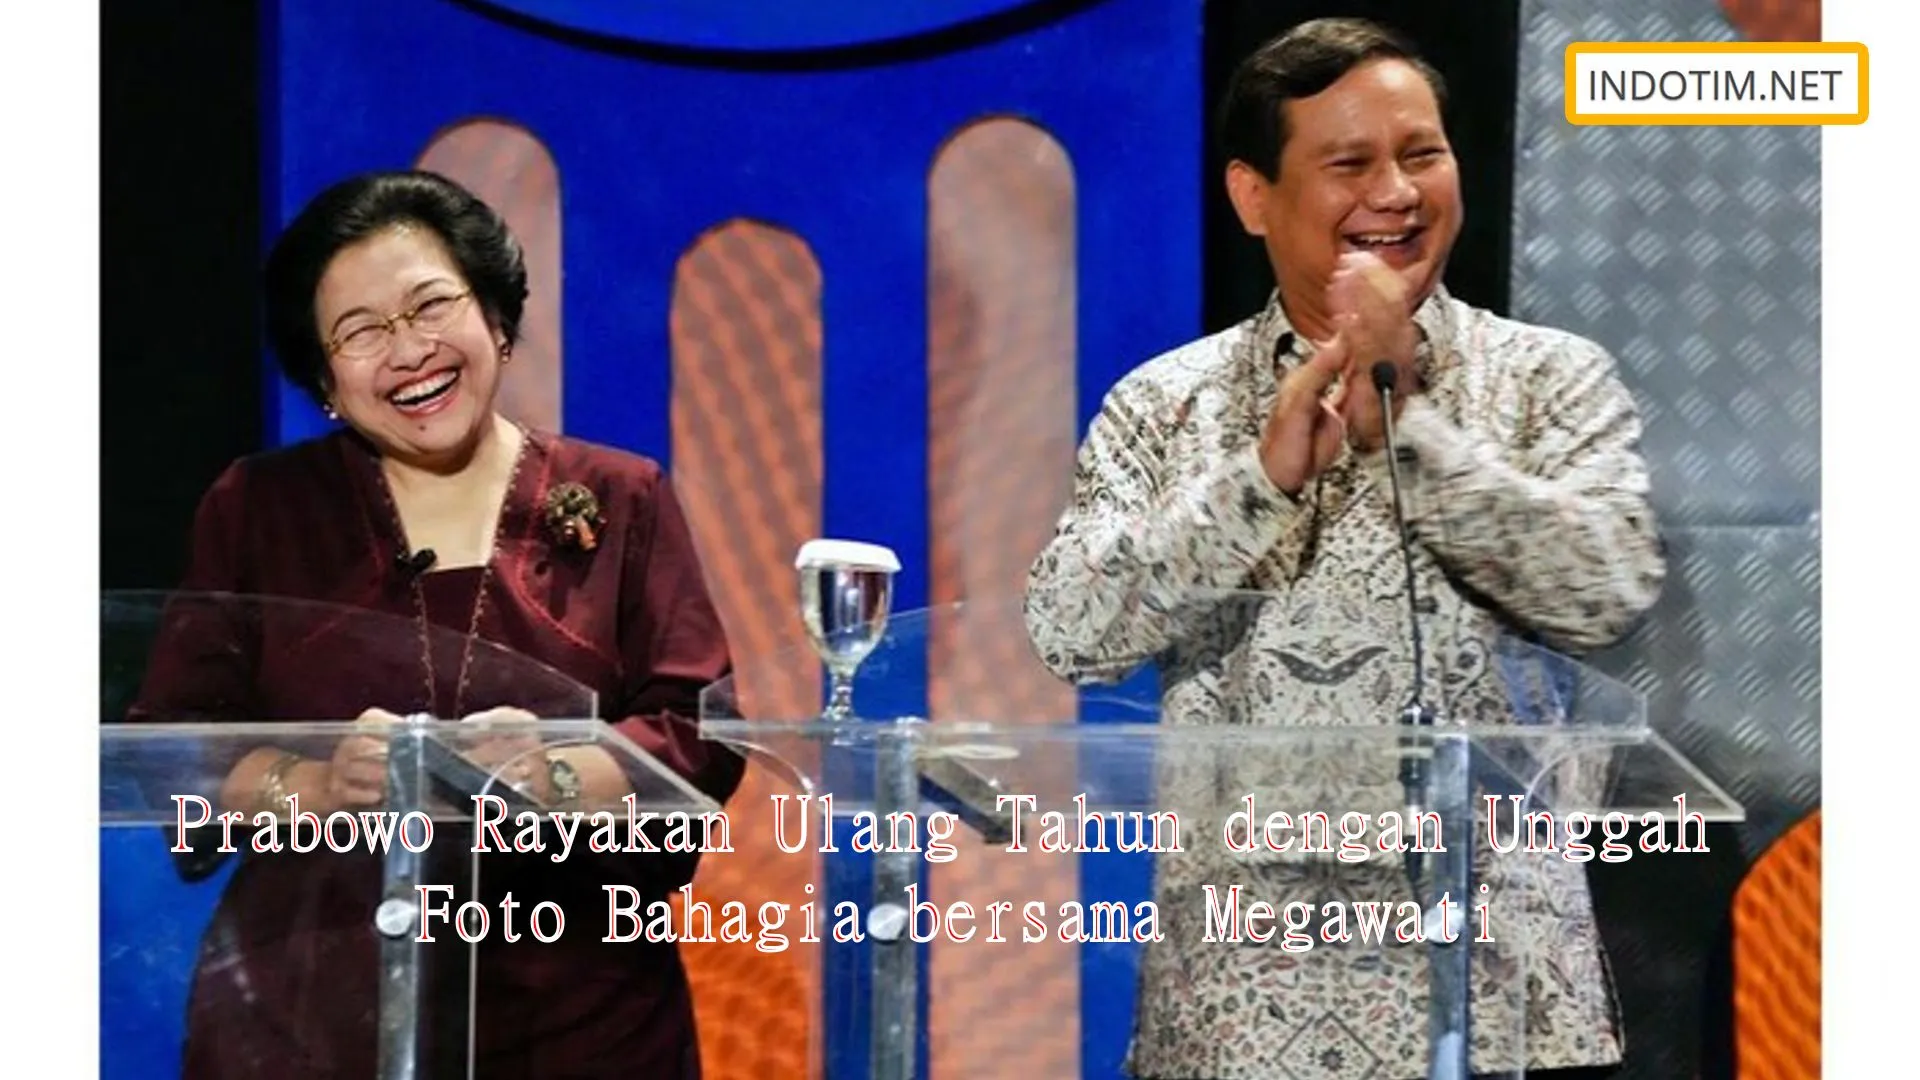 Prabowo Rayakan Ulang Tahun dengan Unggah Foto Bahagia bersama Megawati